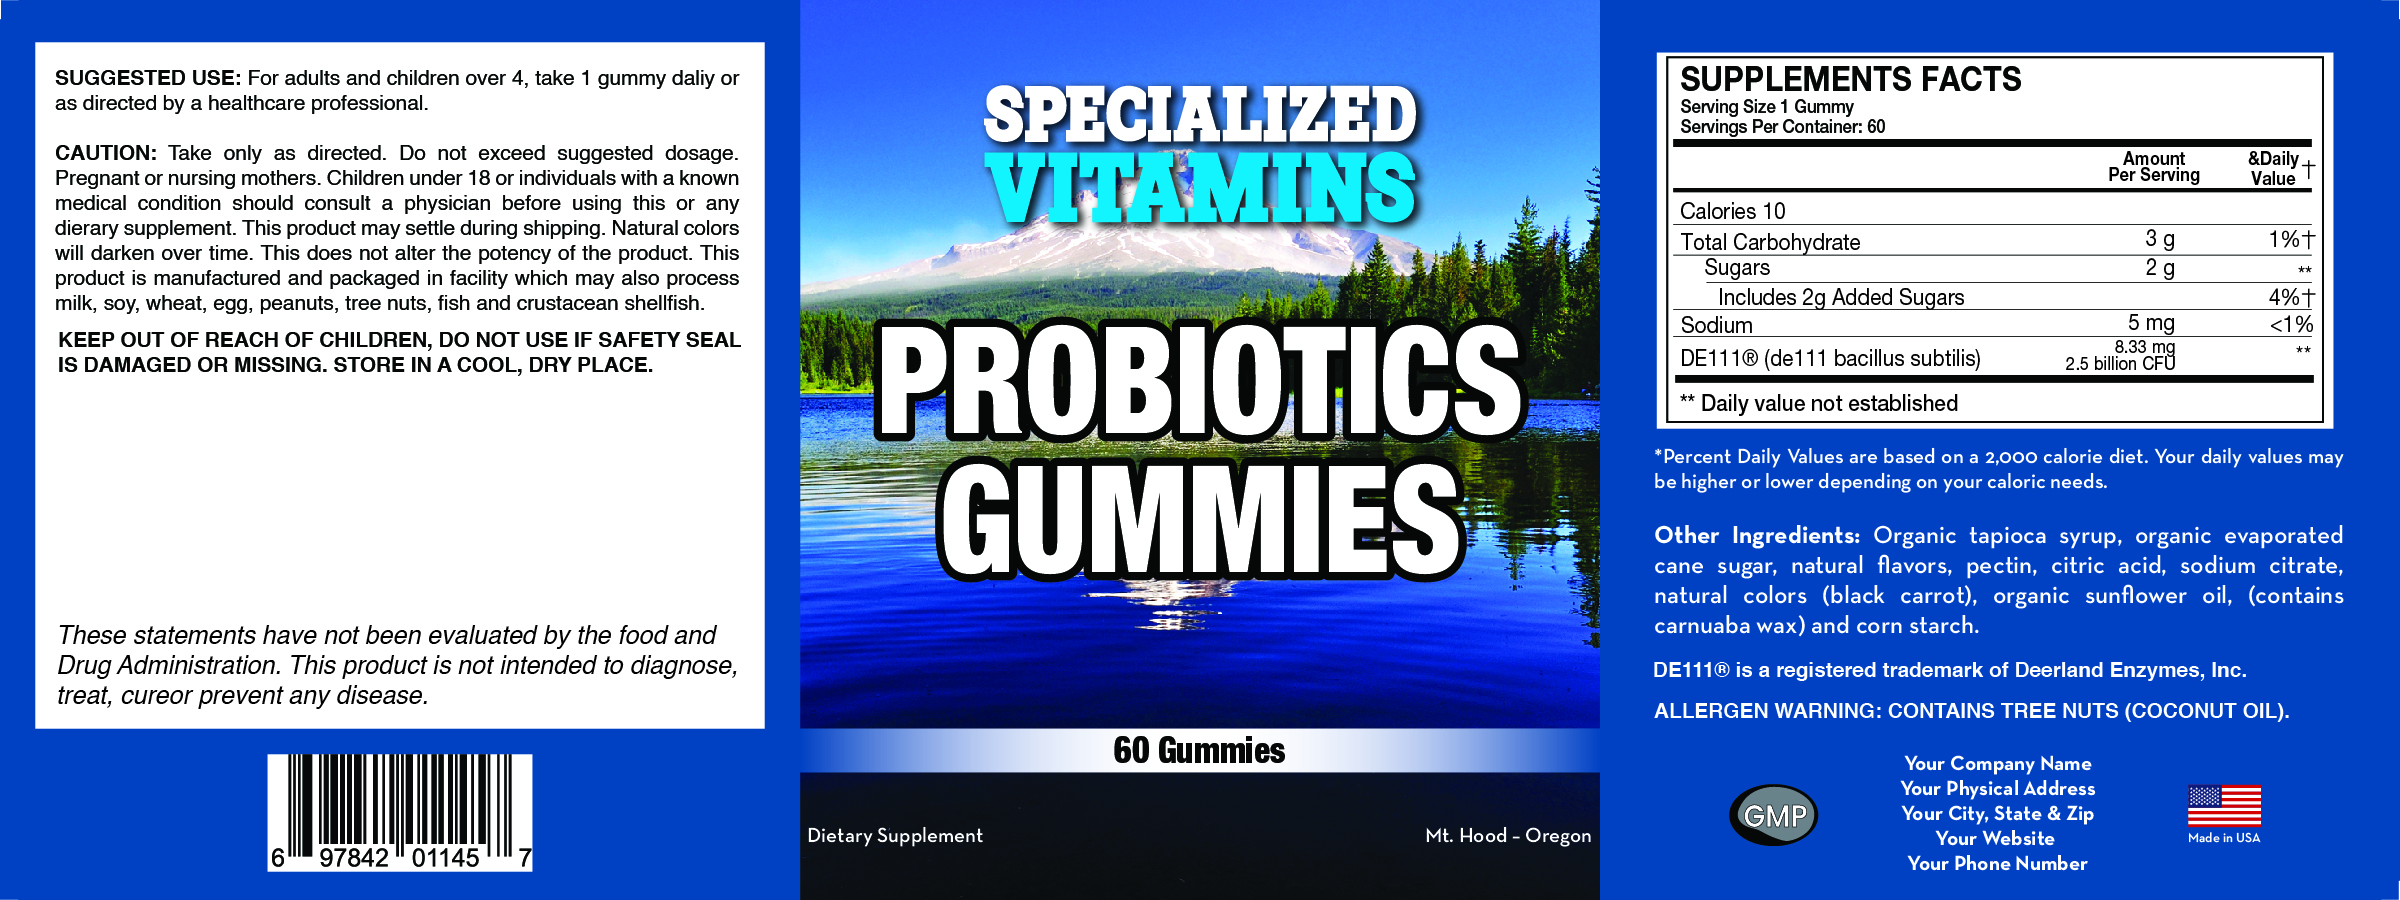 Probiotic Gummies ORGANIC - 60 Gummies - Vegetarian